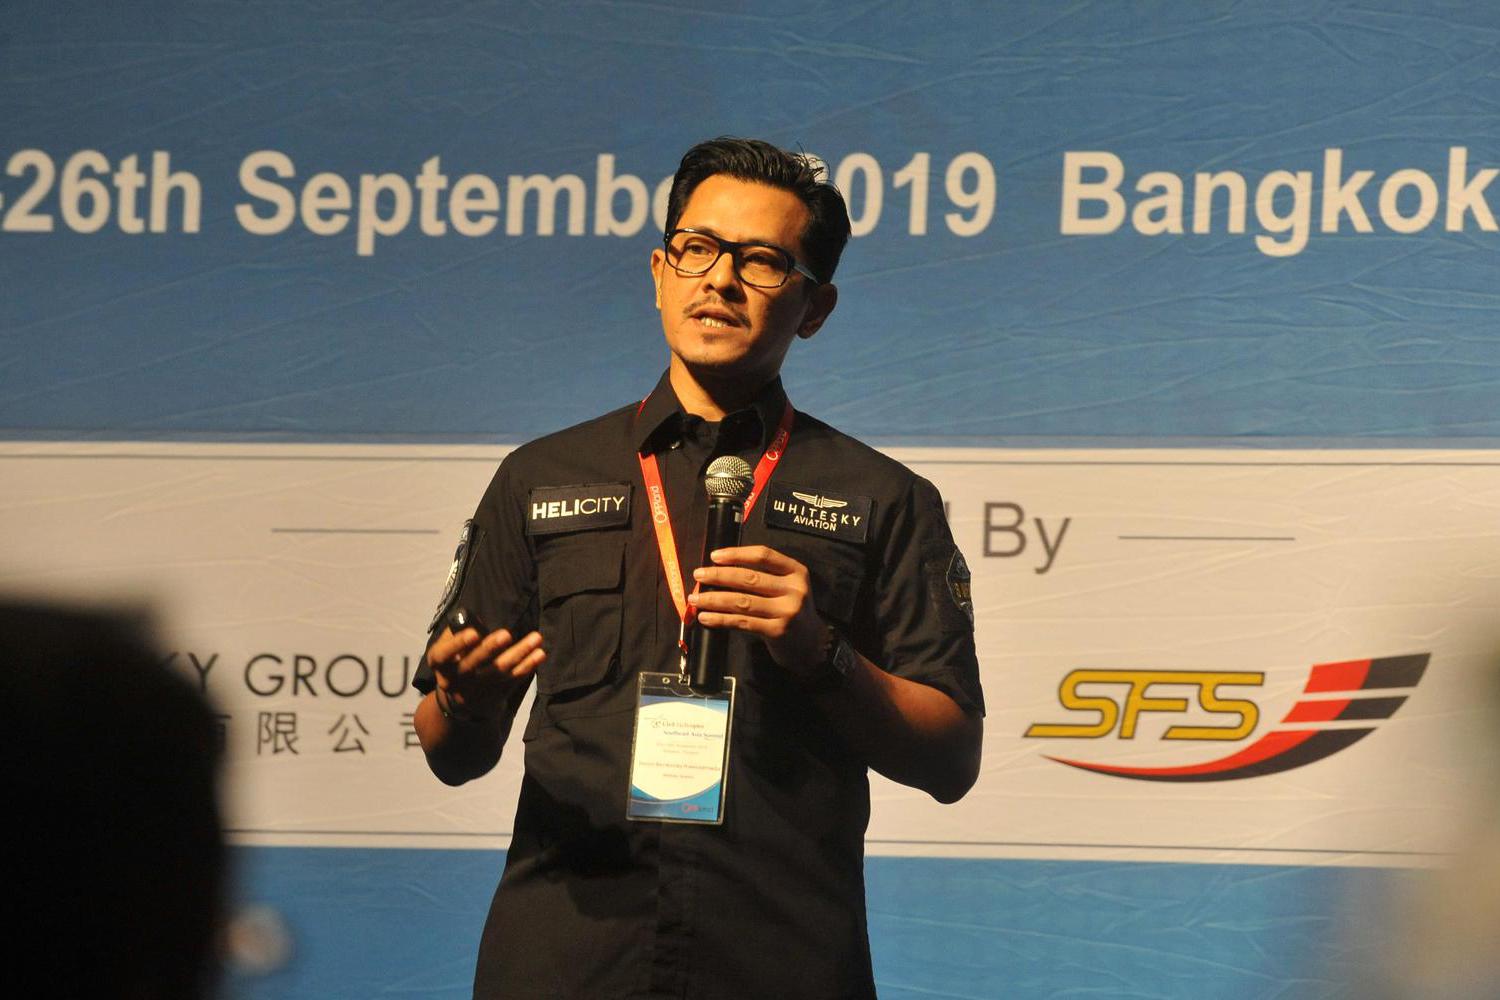 CEO Whitesky Aviation Denon B. Prawiraatmadja menyampaikan presentasi tentang potensi dan pertumbuhan pasar helikopter di Indonesia pada 4th Civil Helicopter Southeast Asia Summit, di Bangkok, Thailand, Kamis (26/9/2019). Operator helikopter Indonesia, Wh